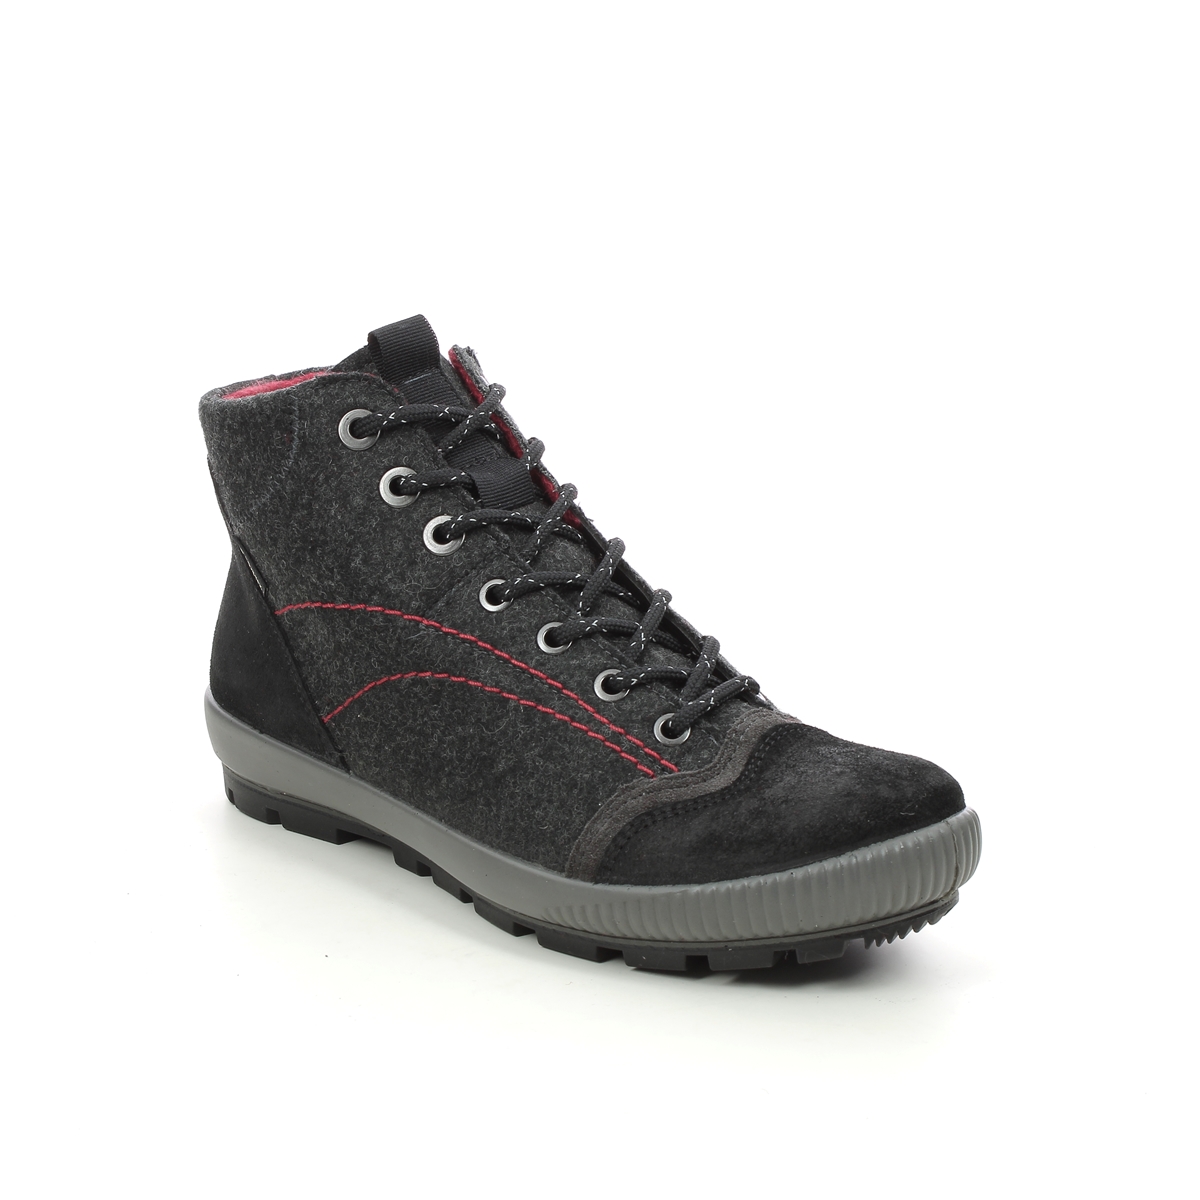 Legero Tanaro Gtx Trek Black suede Womens walking boots 2000123-0000 in a Plain Leather in Size 5